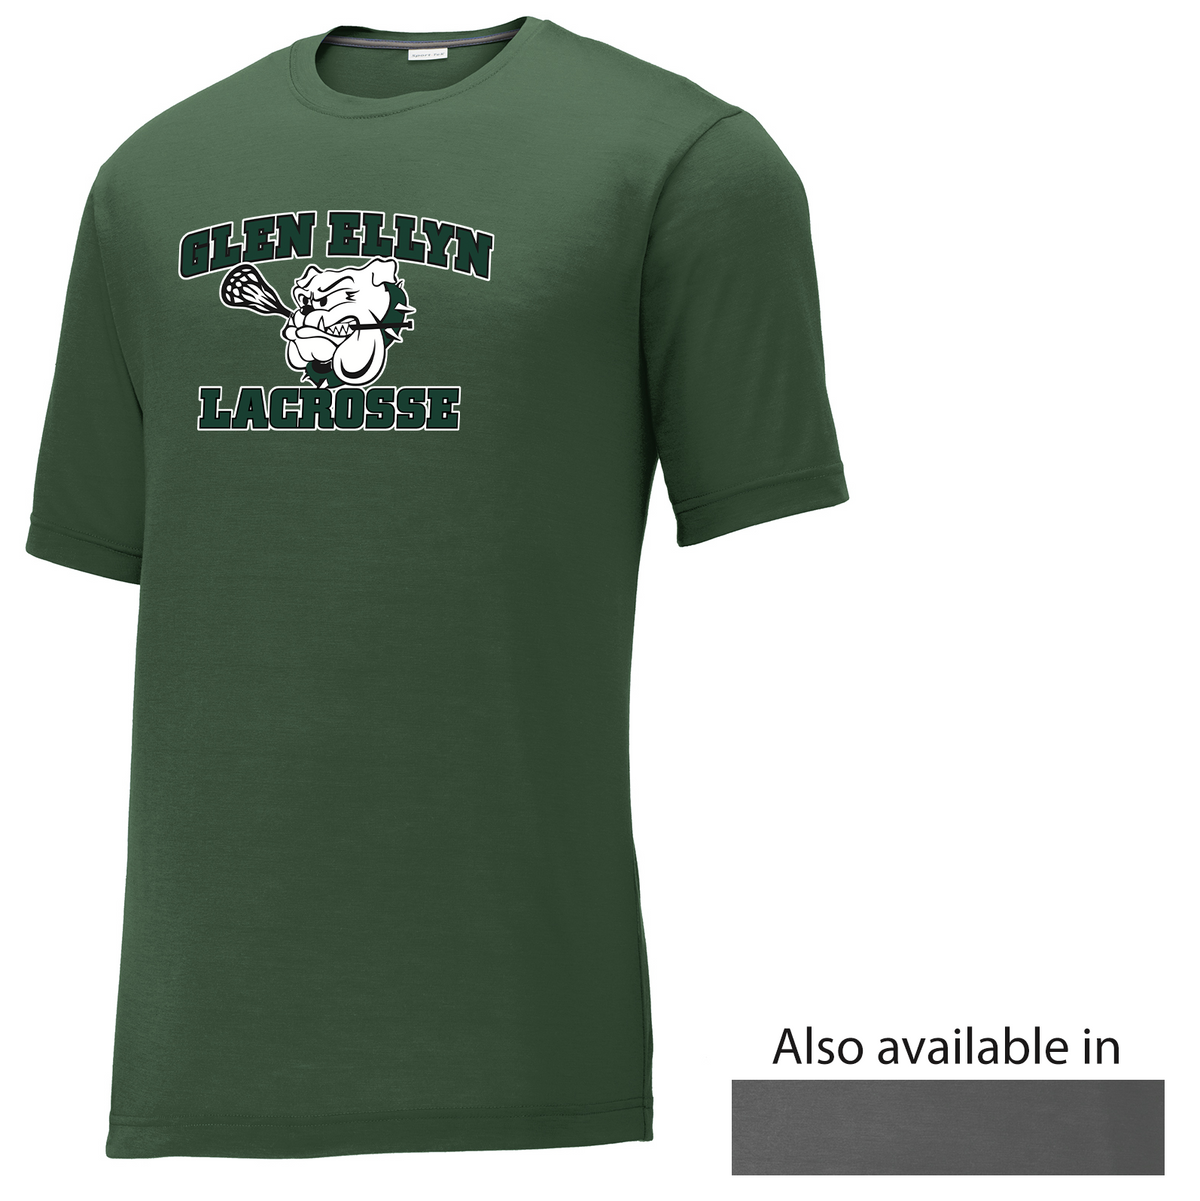 Glen Ellyn Bulldogs Lacrosse CottonTouch Performance T-Shirt